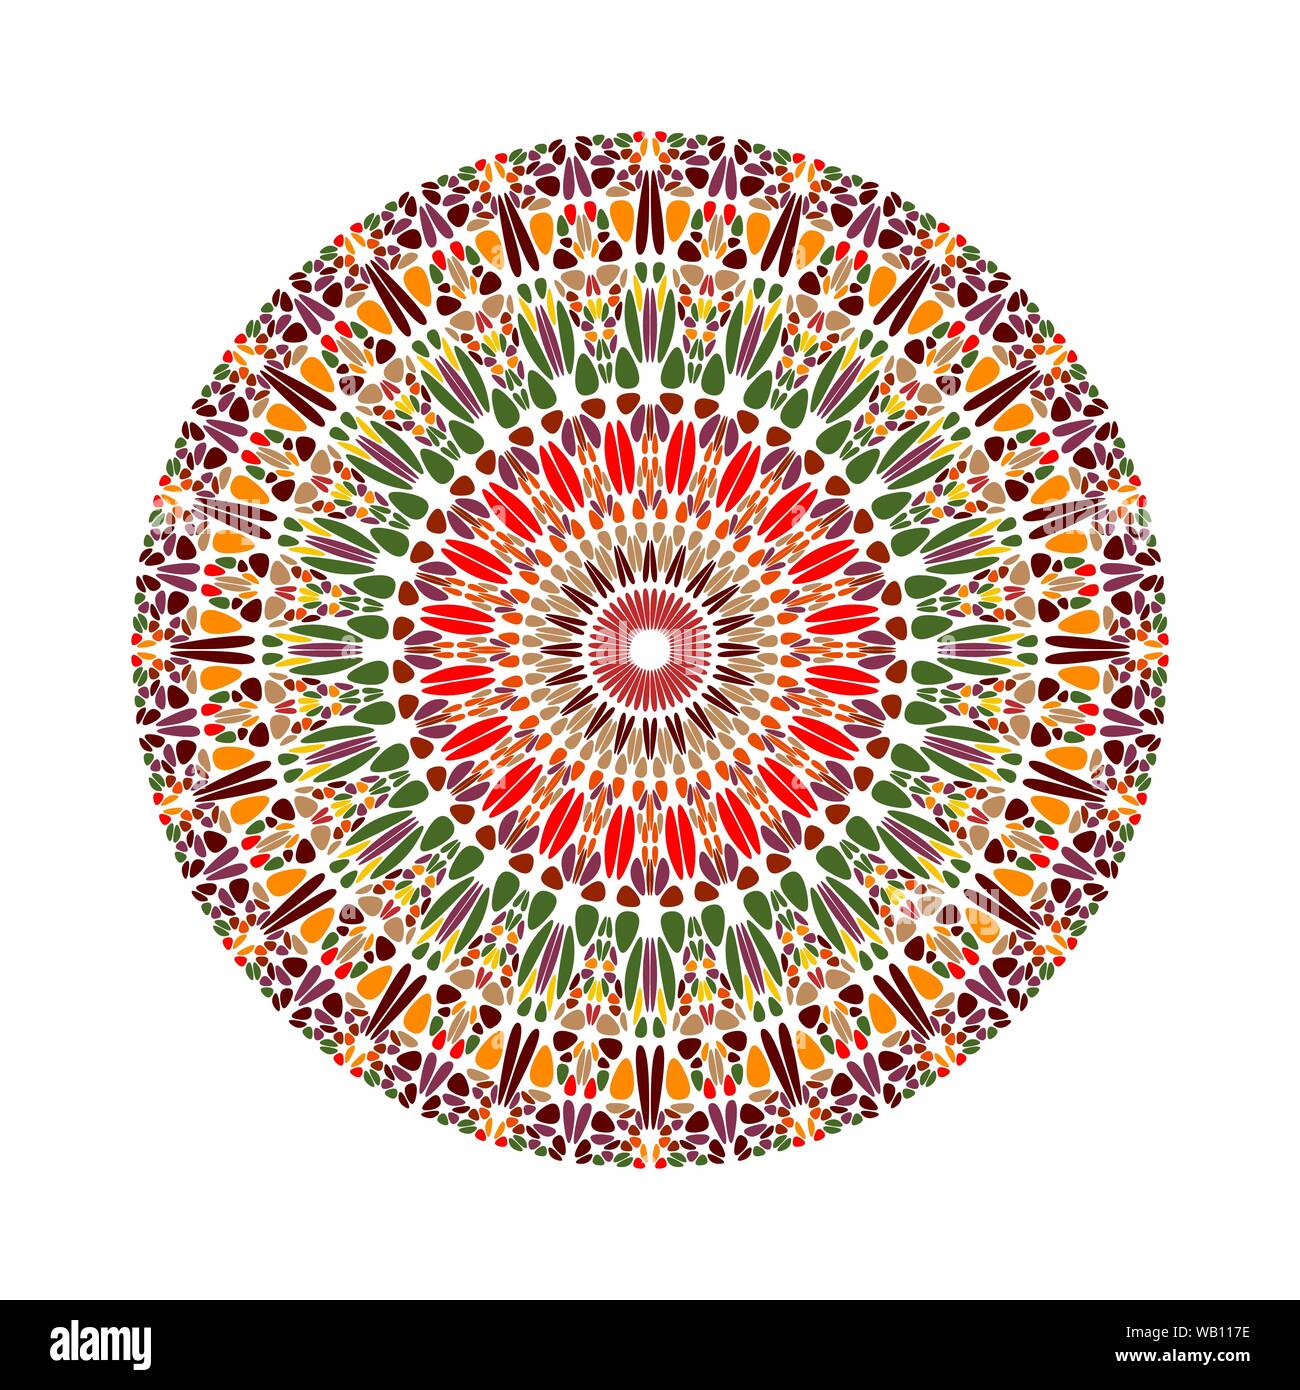 Ornement gravier circulaire ronde mandala - vecteur conception abstraite géométrique sur fond blanc Illustration de Vecteur